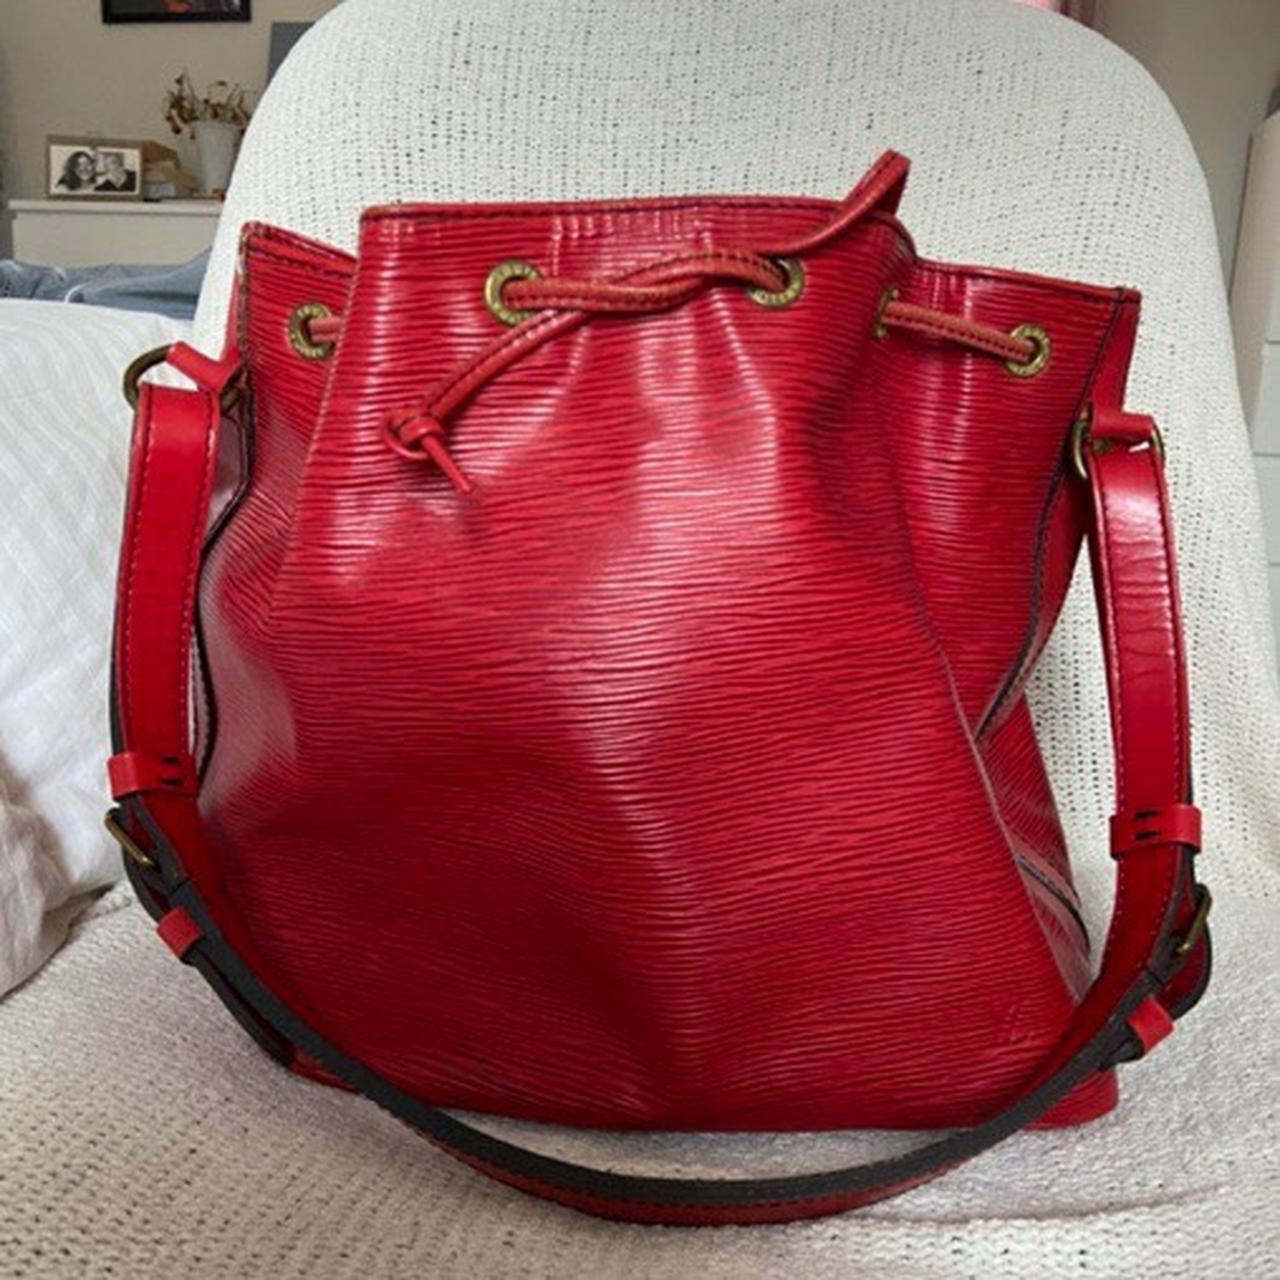 LOUIS VUITTON Noe Large Epi Leather Shoulder Bag Red